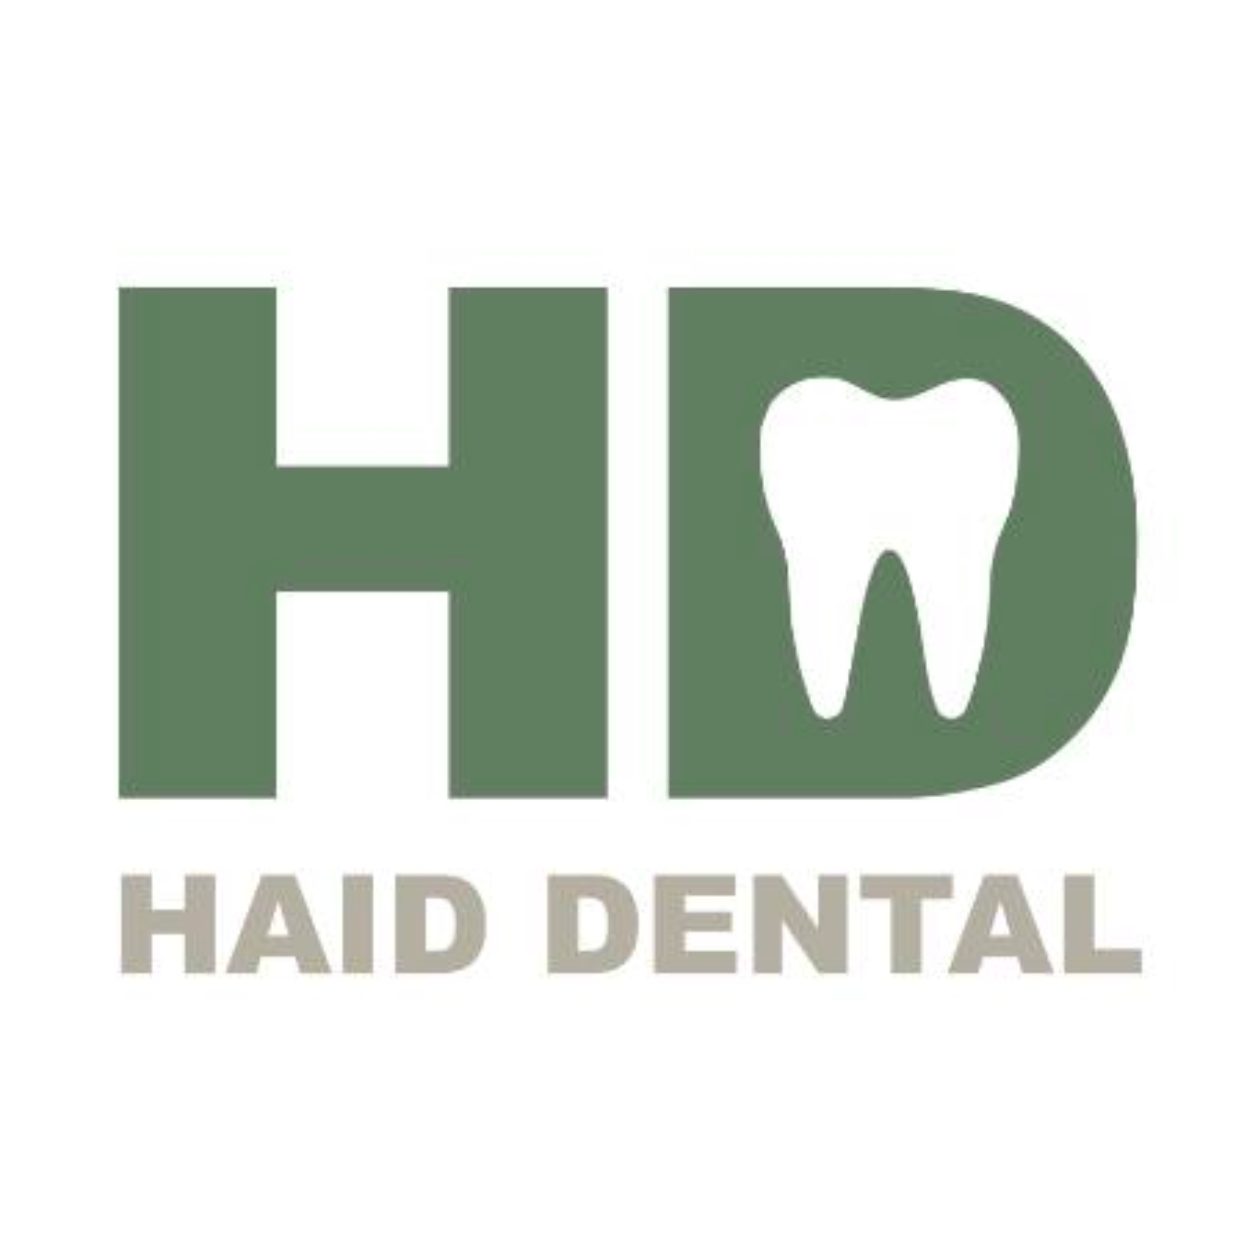 Haid Dental - Dublin, OH 43016 - (614)635-9675 | ShowMeLocal.com